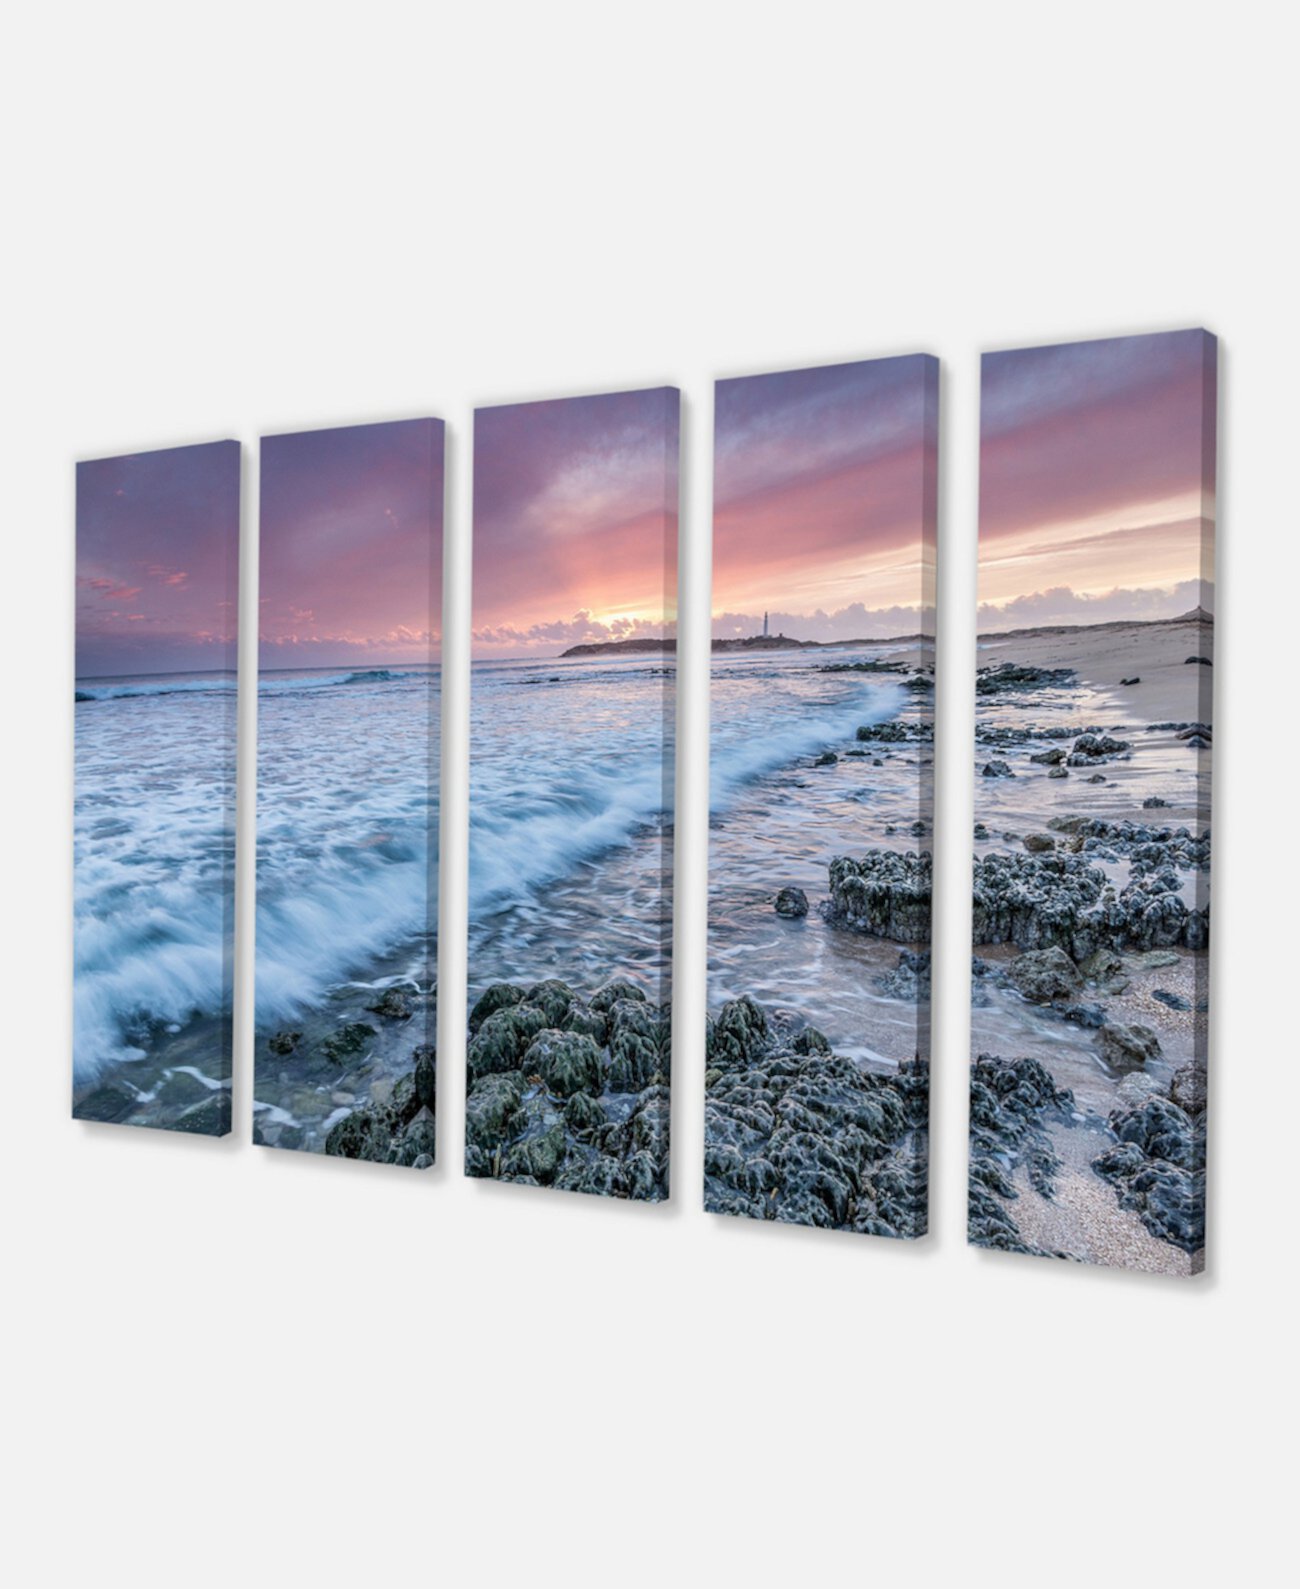 Художественная печать на холсте с морским пейзажем на пляже мыса Трафальгар на пляже Designart - 60 "X 28" - 5 панелей Design Art